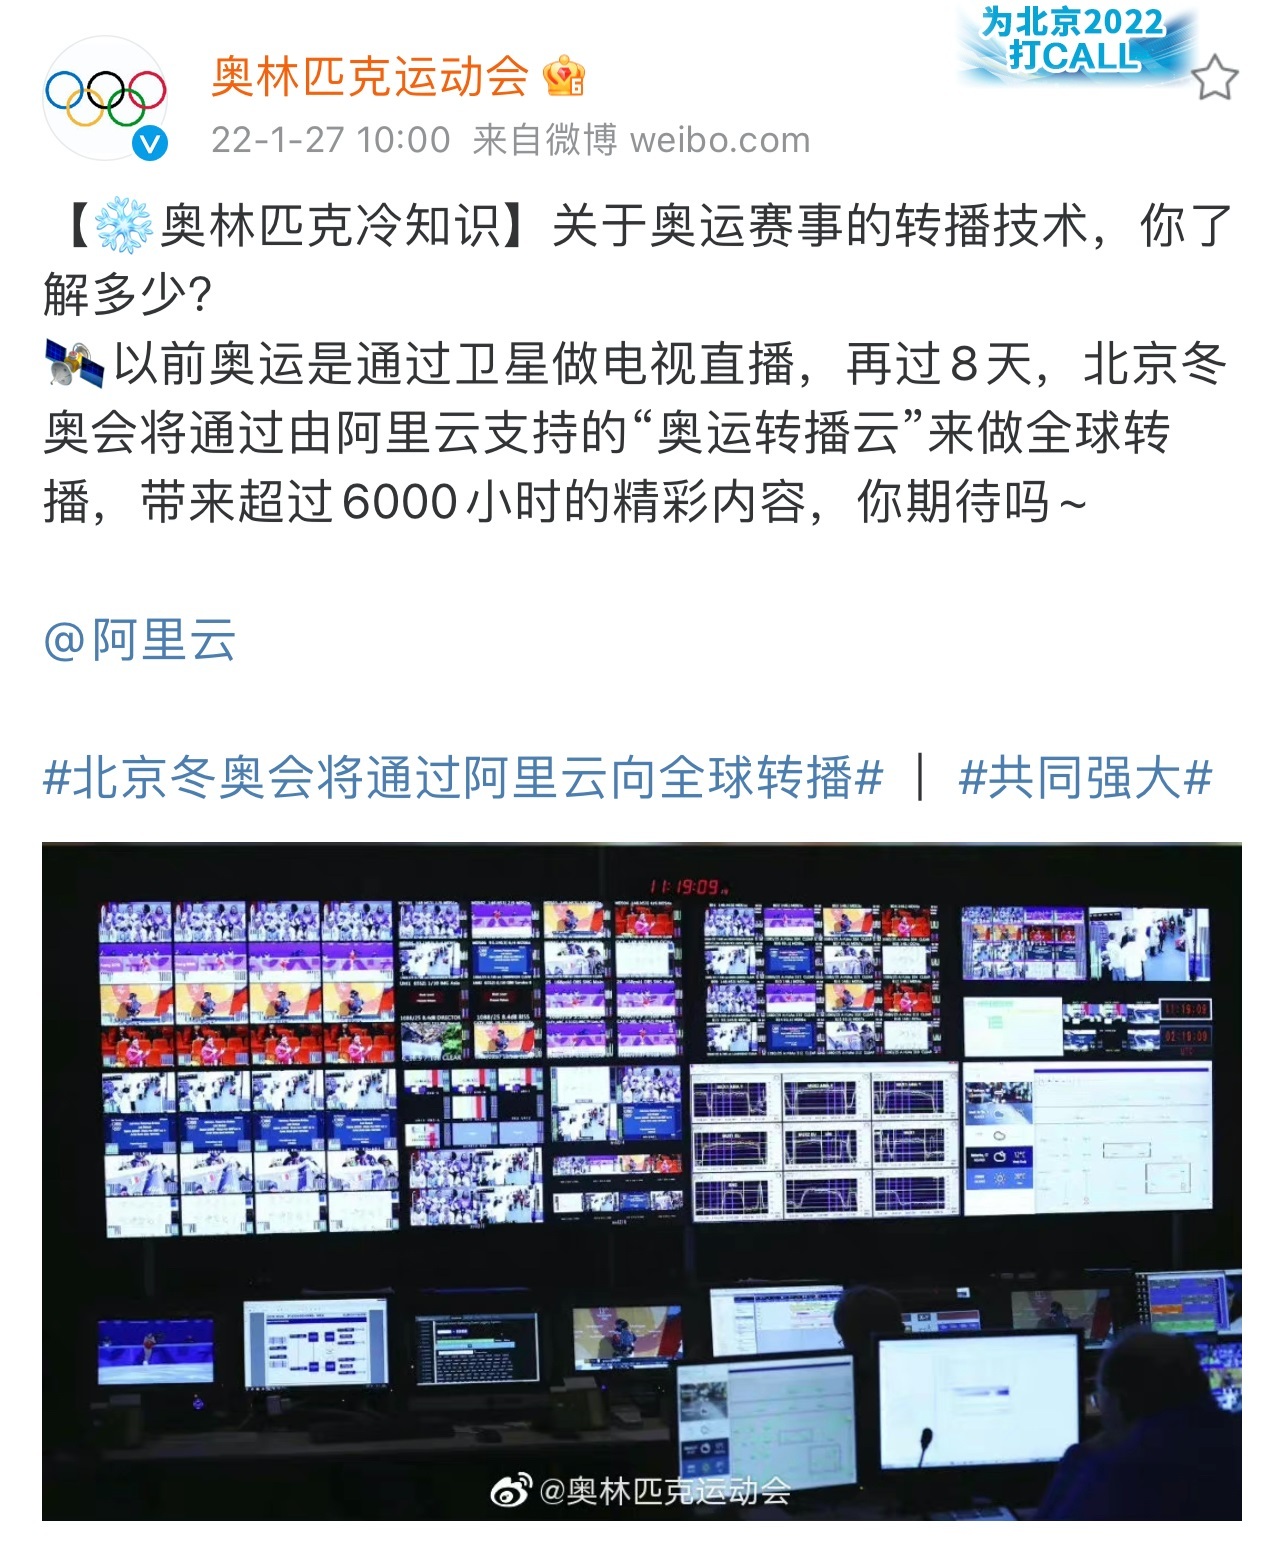 北京冬奥会将通过阿里云向全球转播，带来超过6000小时精彩内容